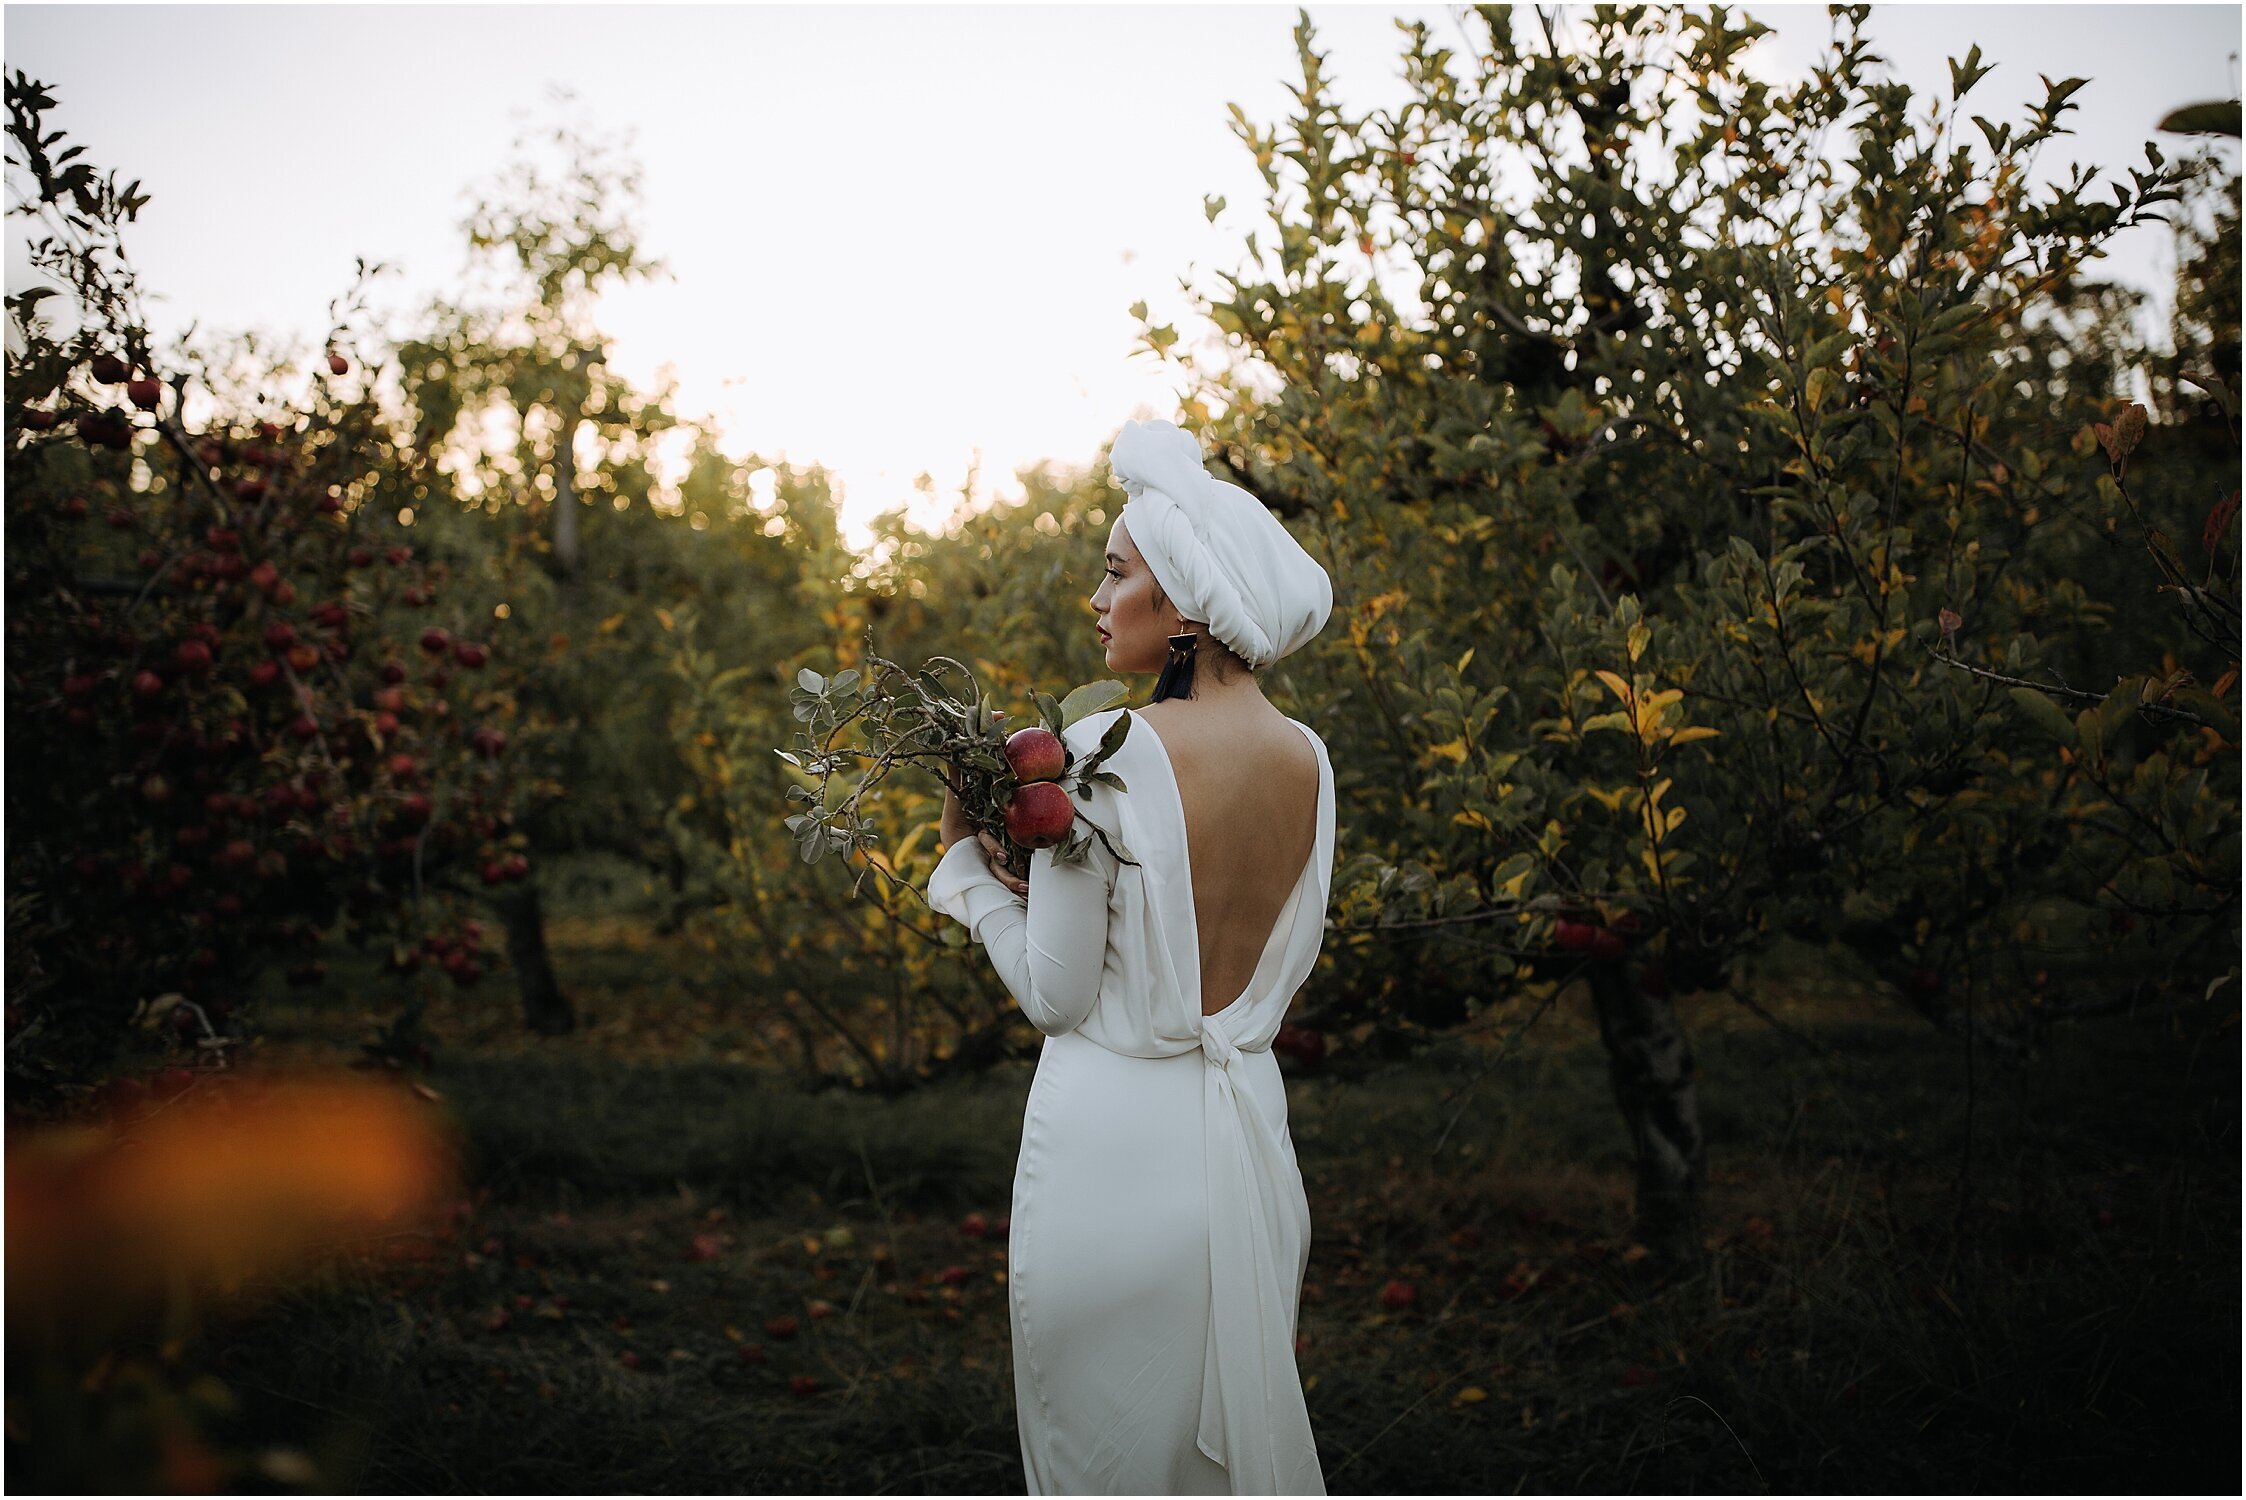 Zanda+Auckland+wedding+photographer+unique+portrait+photoshoot+ideas+autumn+winter+Windmill+apple+orchard+Coatesville+New+Zealand_19.jpeg